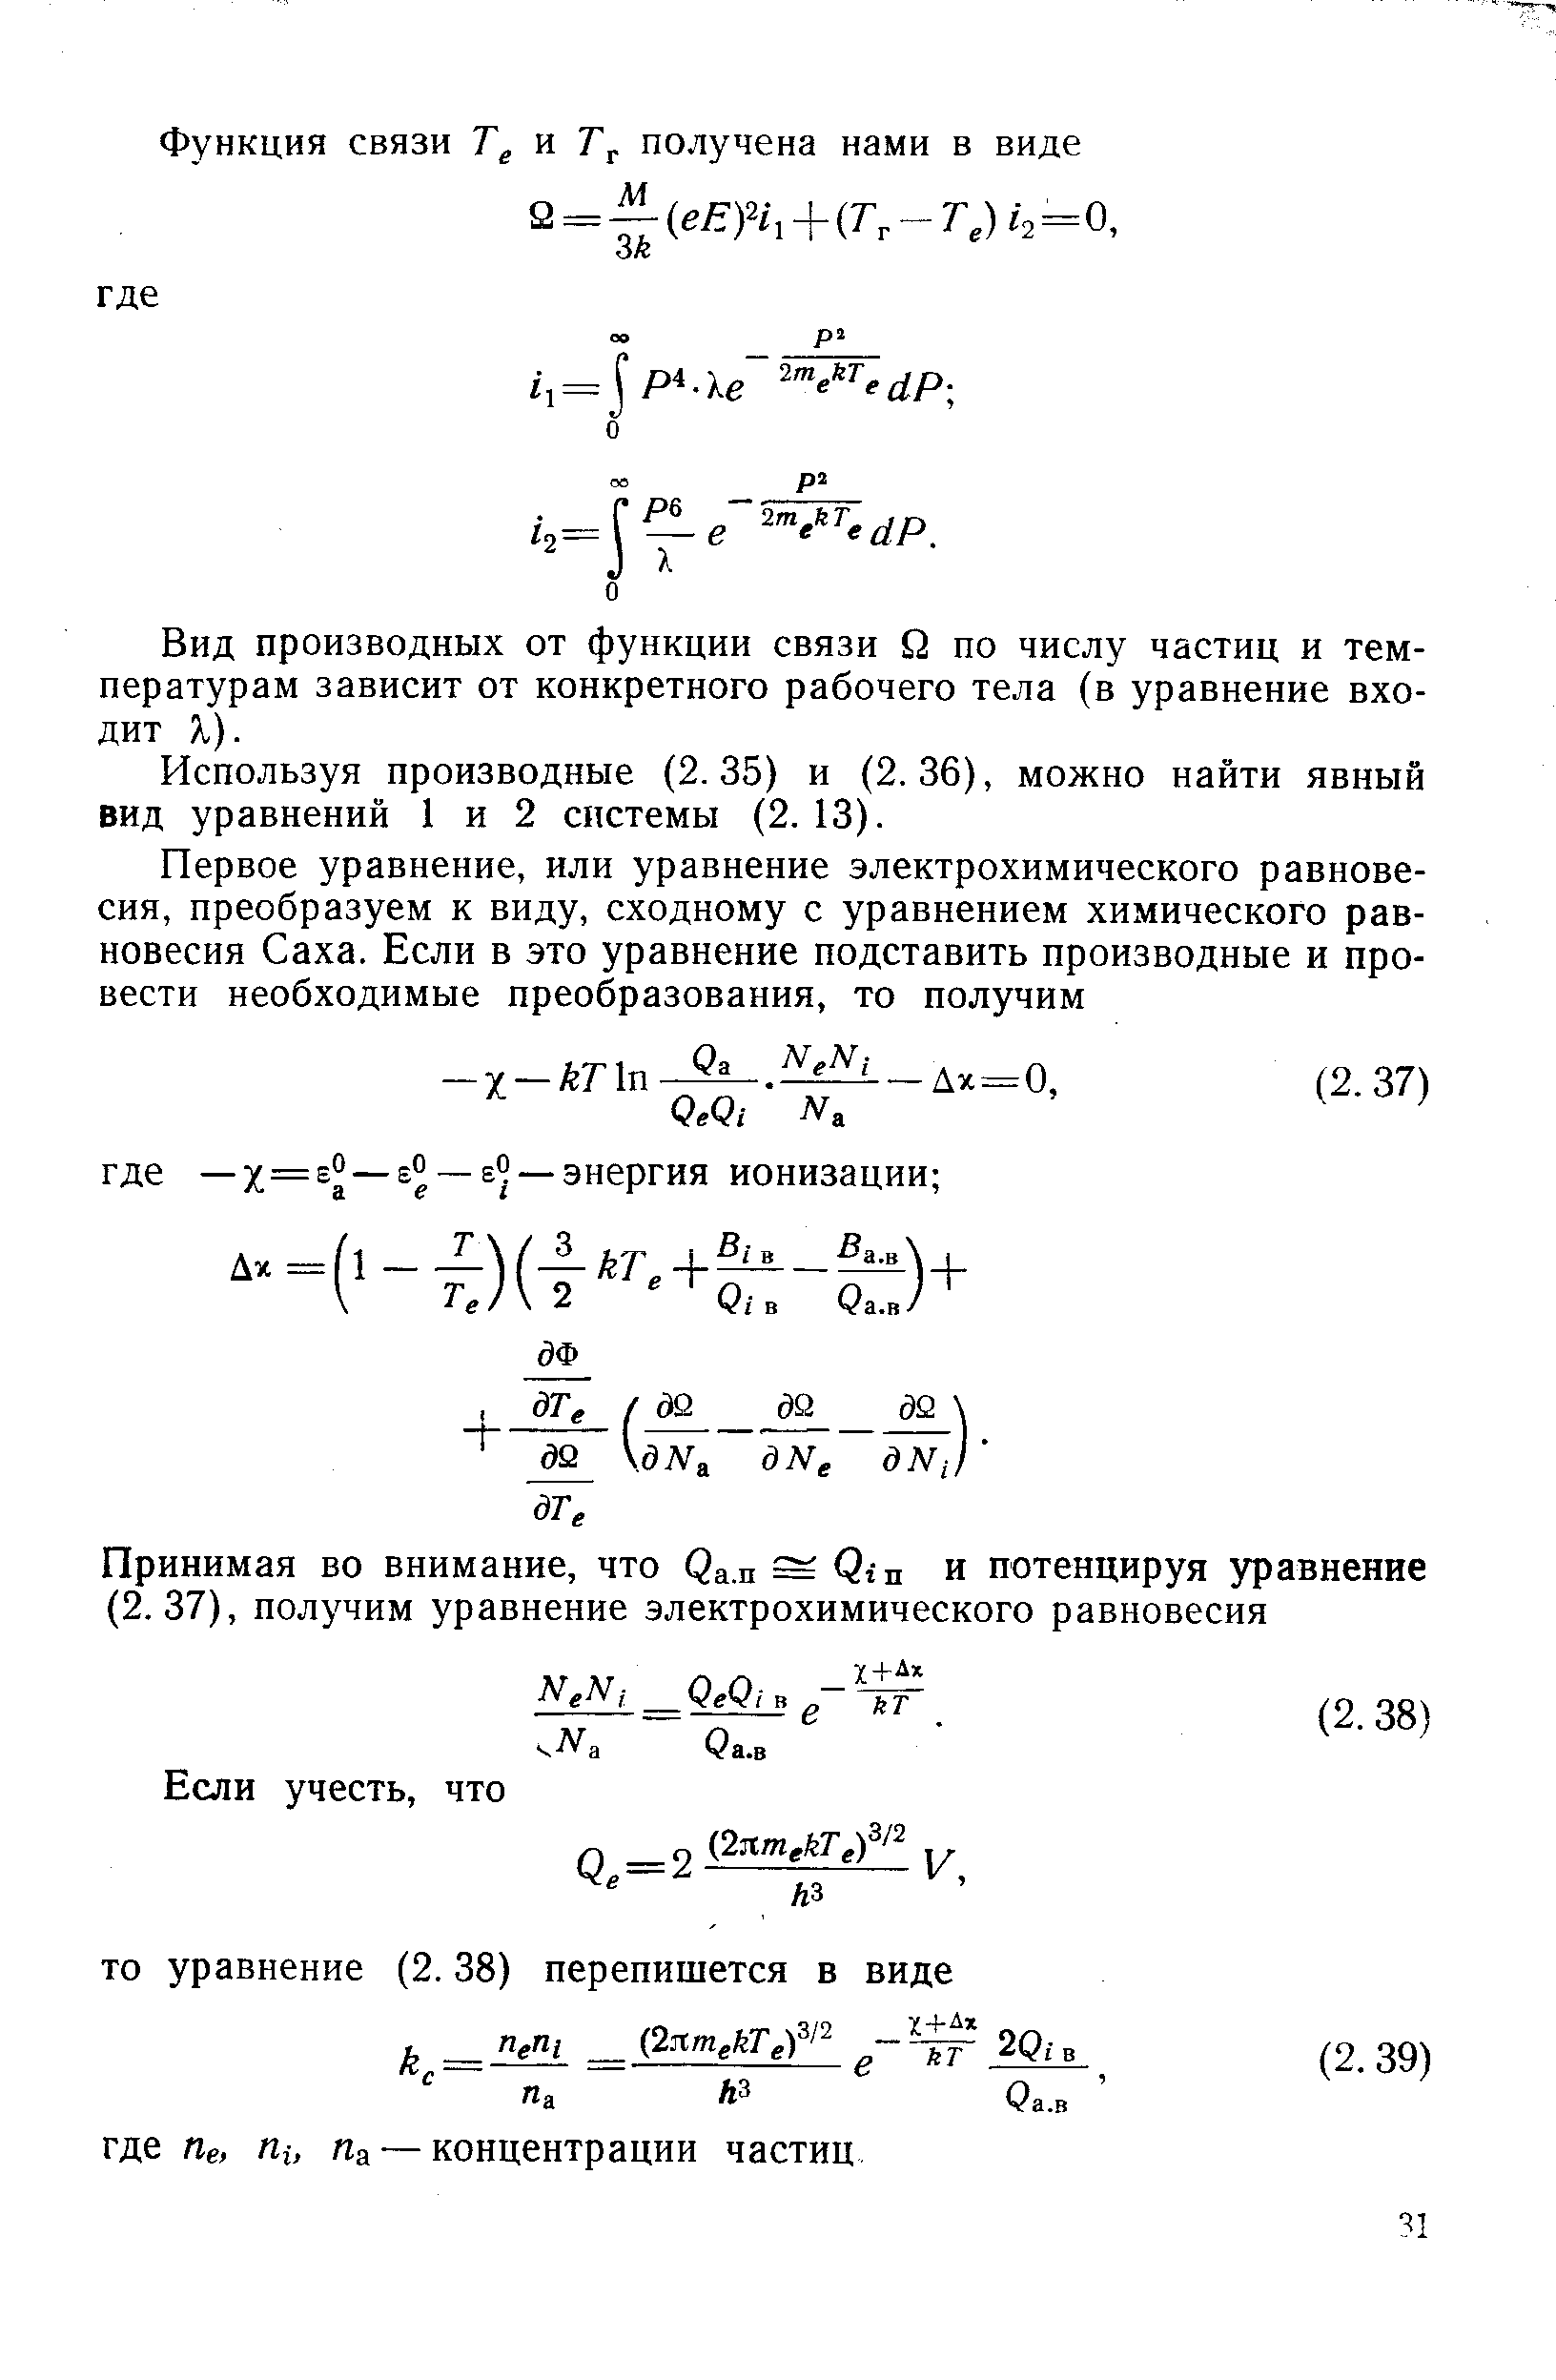 Вид производных от функции связи о по числу частиц и температурам зависит от конкретного рабочего тела (в уравнение входит X).